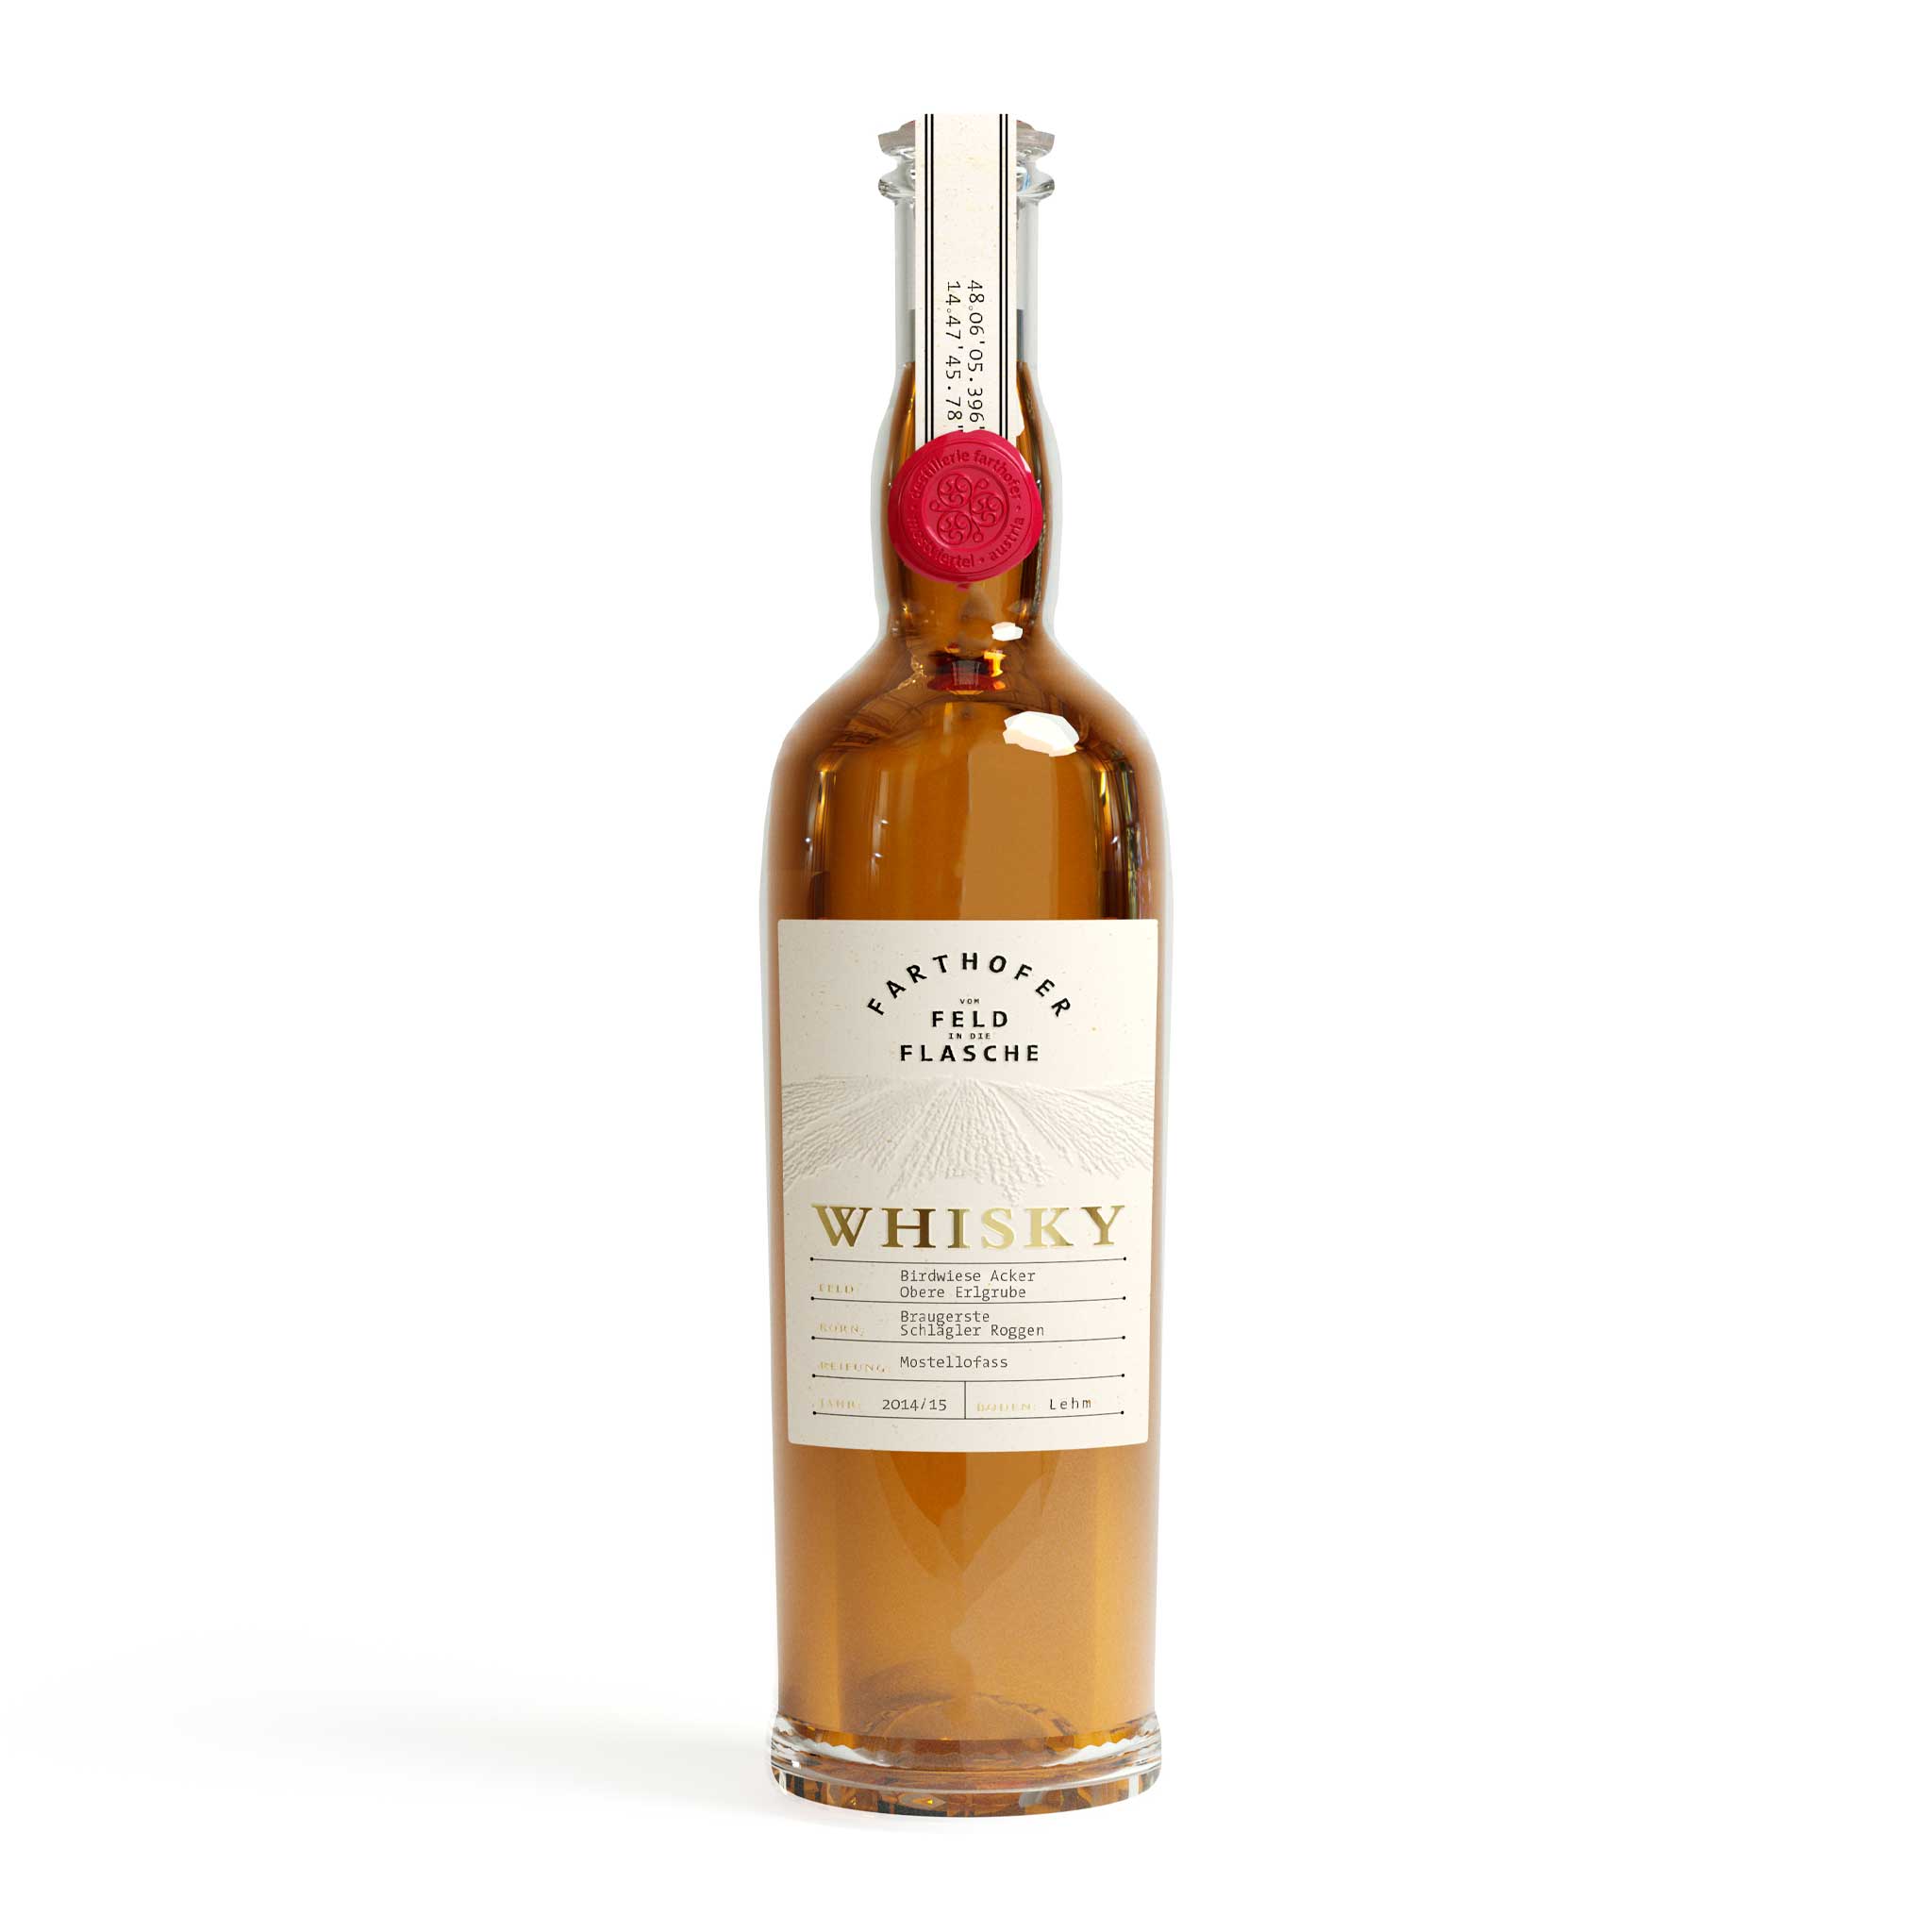 Produktfoto Whisky Braugerste & Schlägler Roggen 2014/15 Mostellofass (52,1 % vol) - Destillerie Farthofer